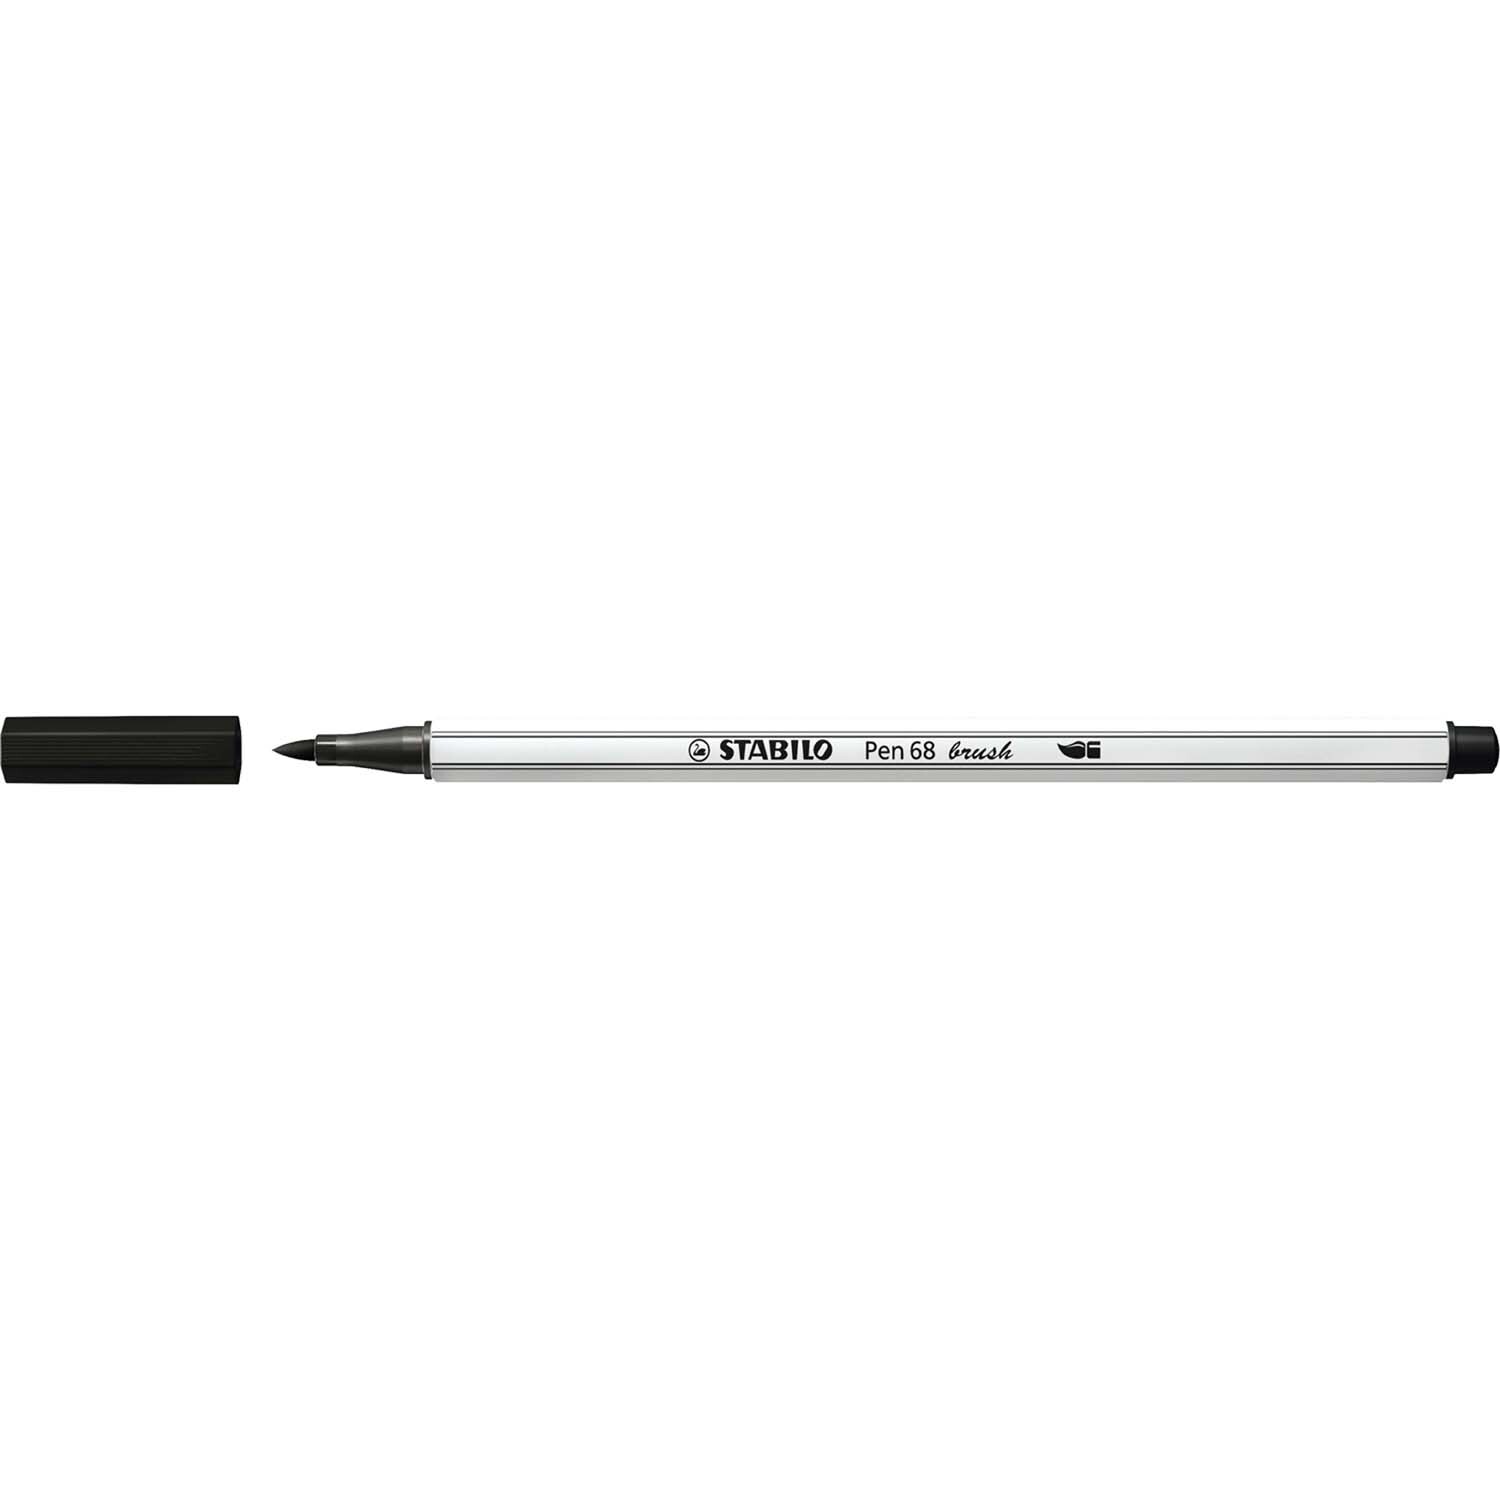 Pen 68 brush